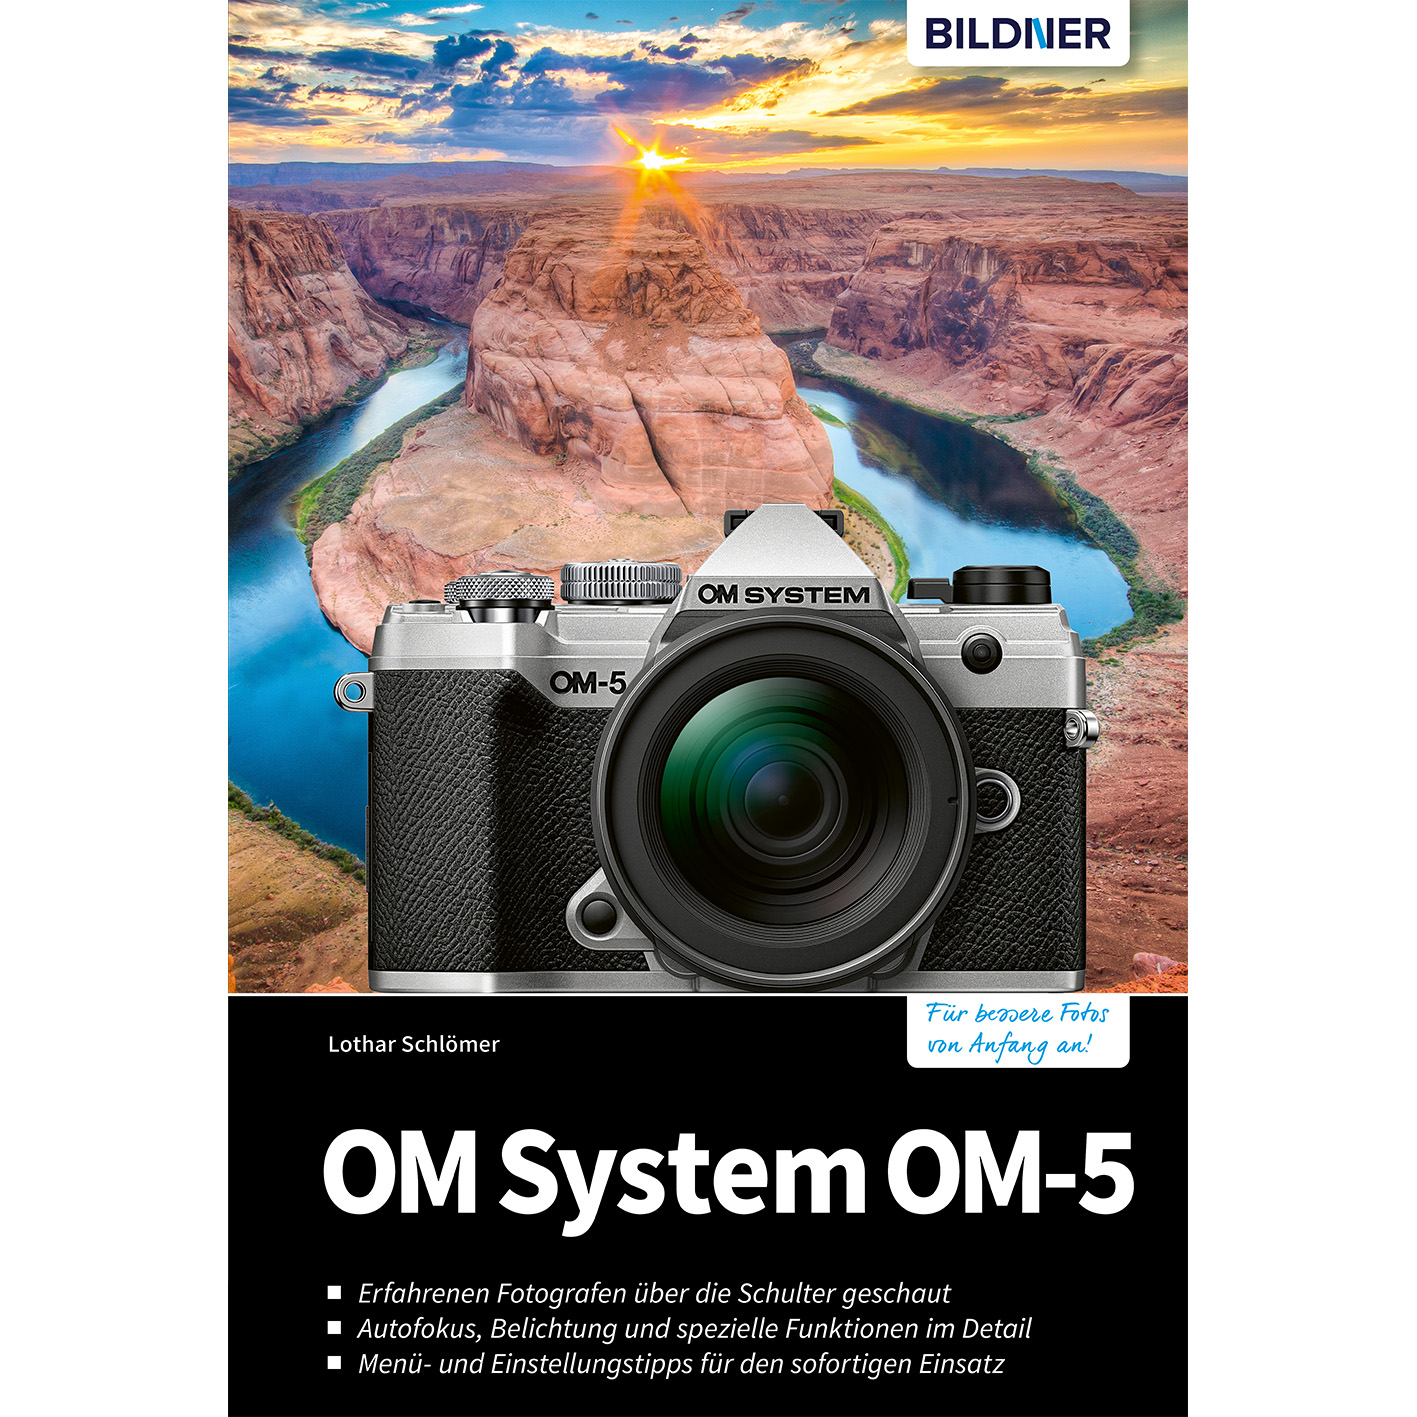 OM Praxisbuch OM-5 Ihrer - Kamera System Das umfangreiche zu